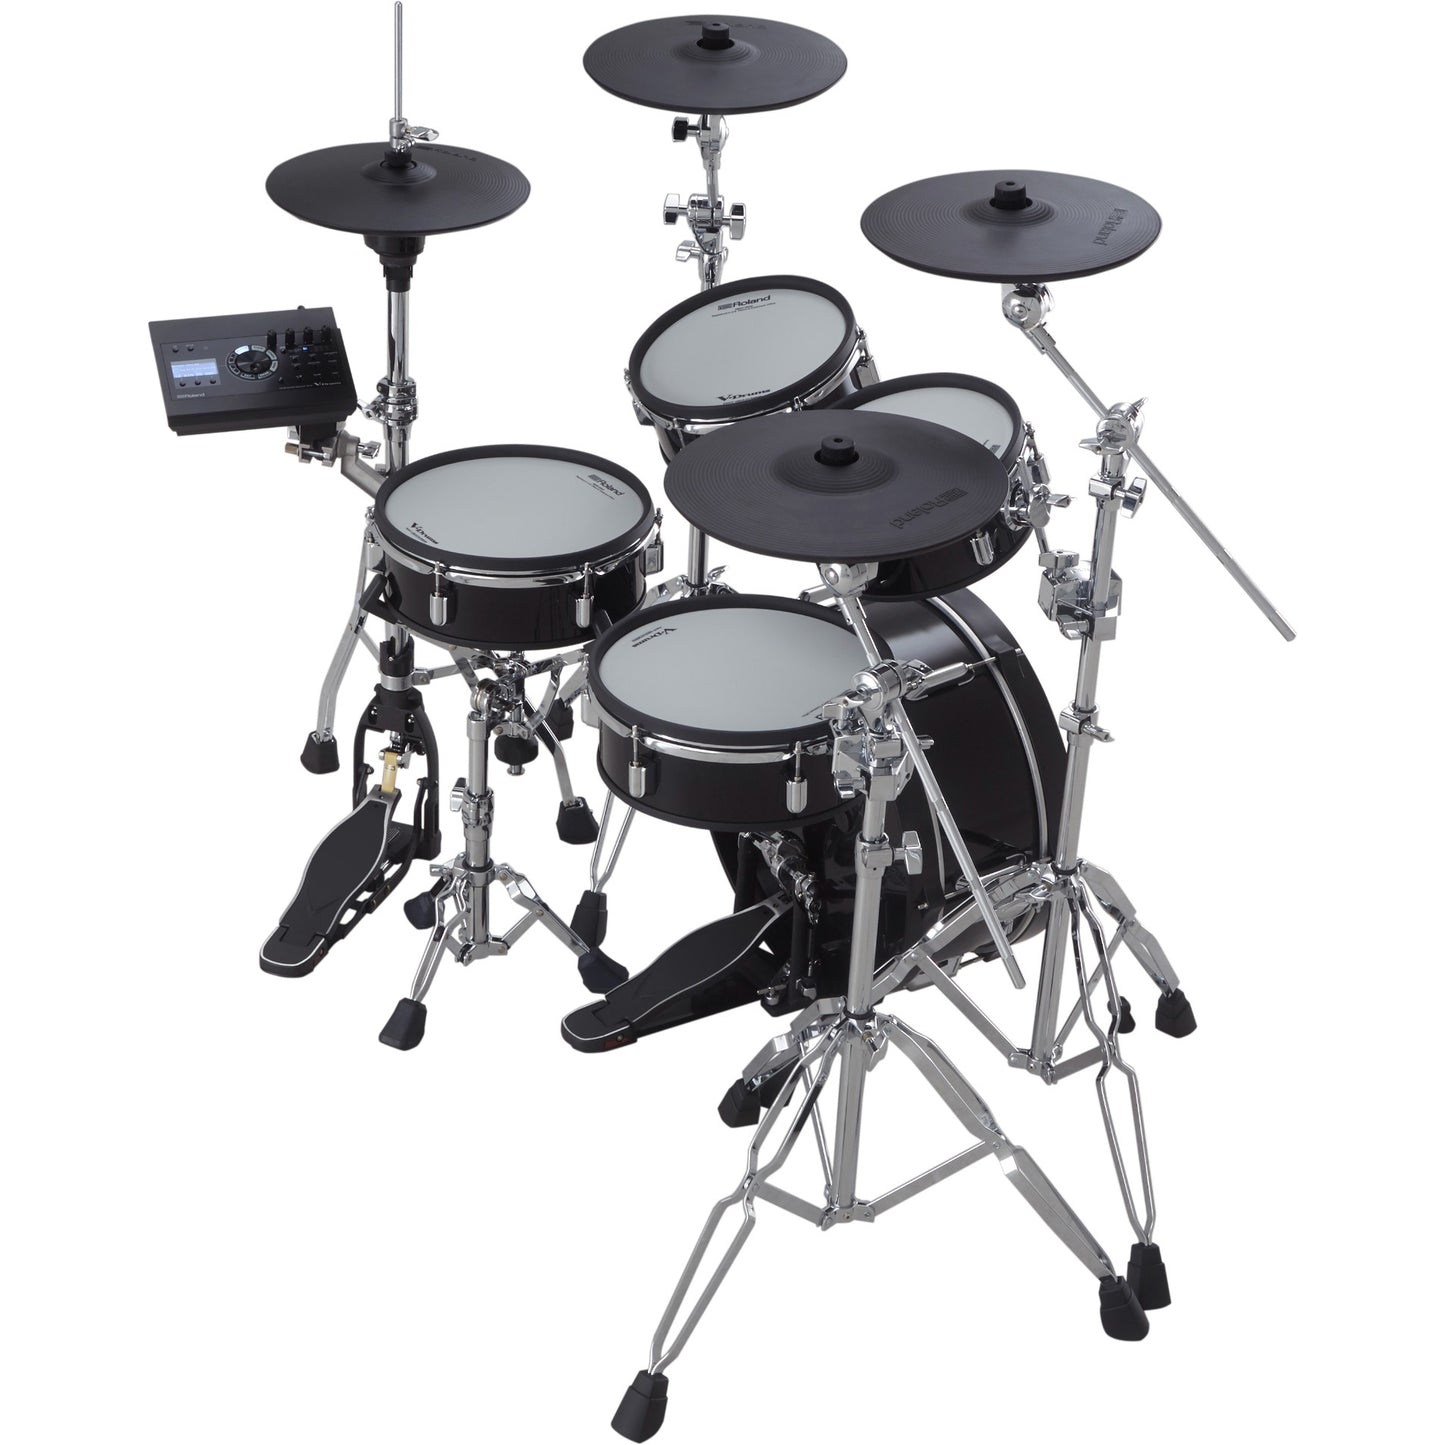 Roland V-Drums Acoustic Design VAD306 Drum Kit